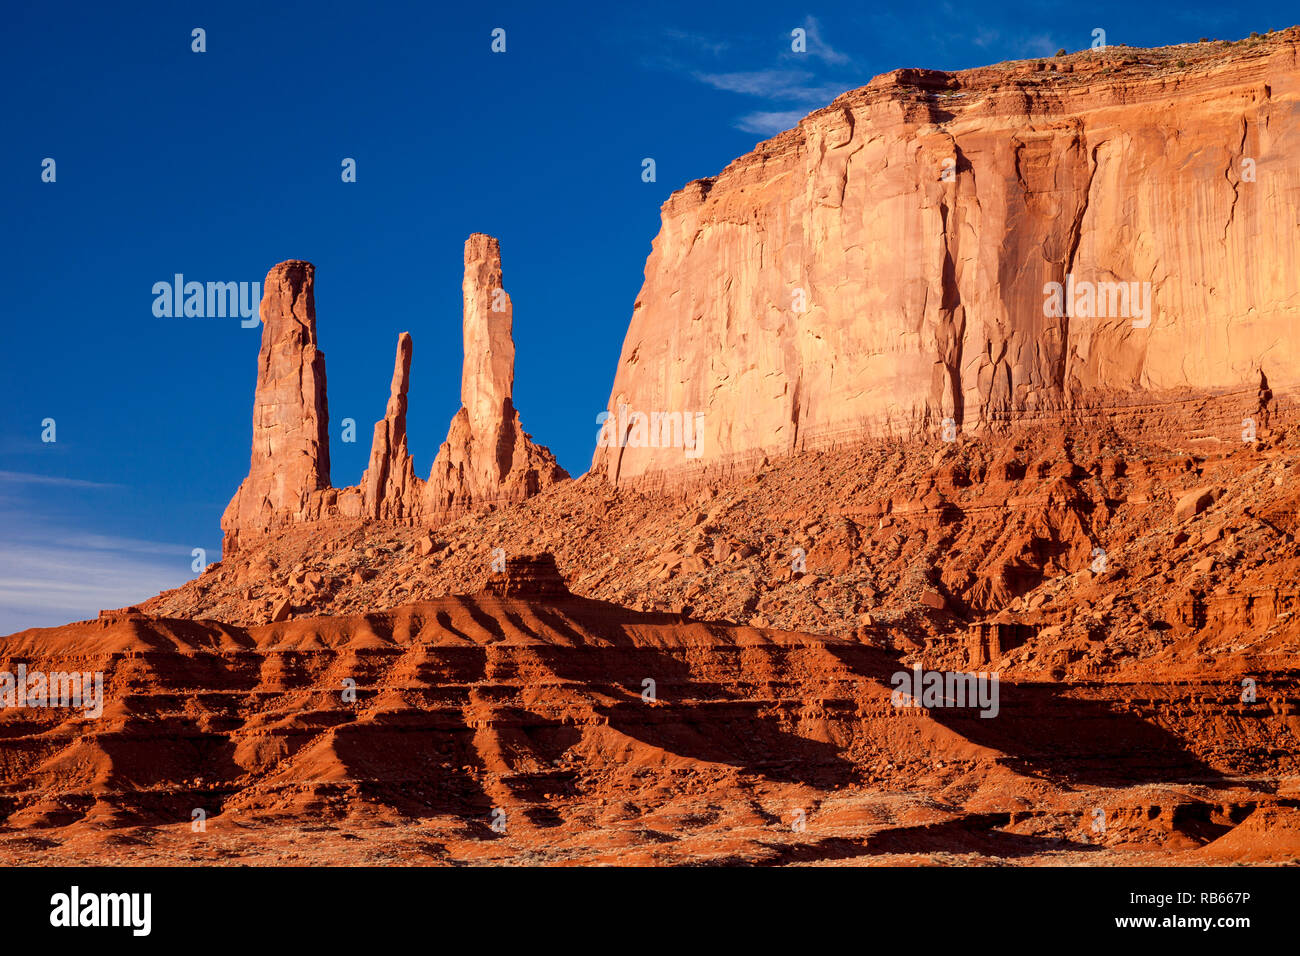 La mattina presto vista sulla formazione rocciosa Tre Sorelle, Monument Valley, Navaho Tribal Park, Arizona USA Foto Stock